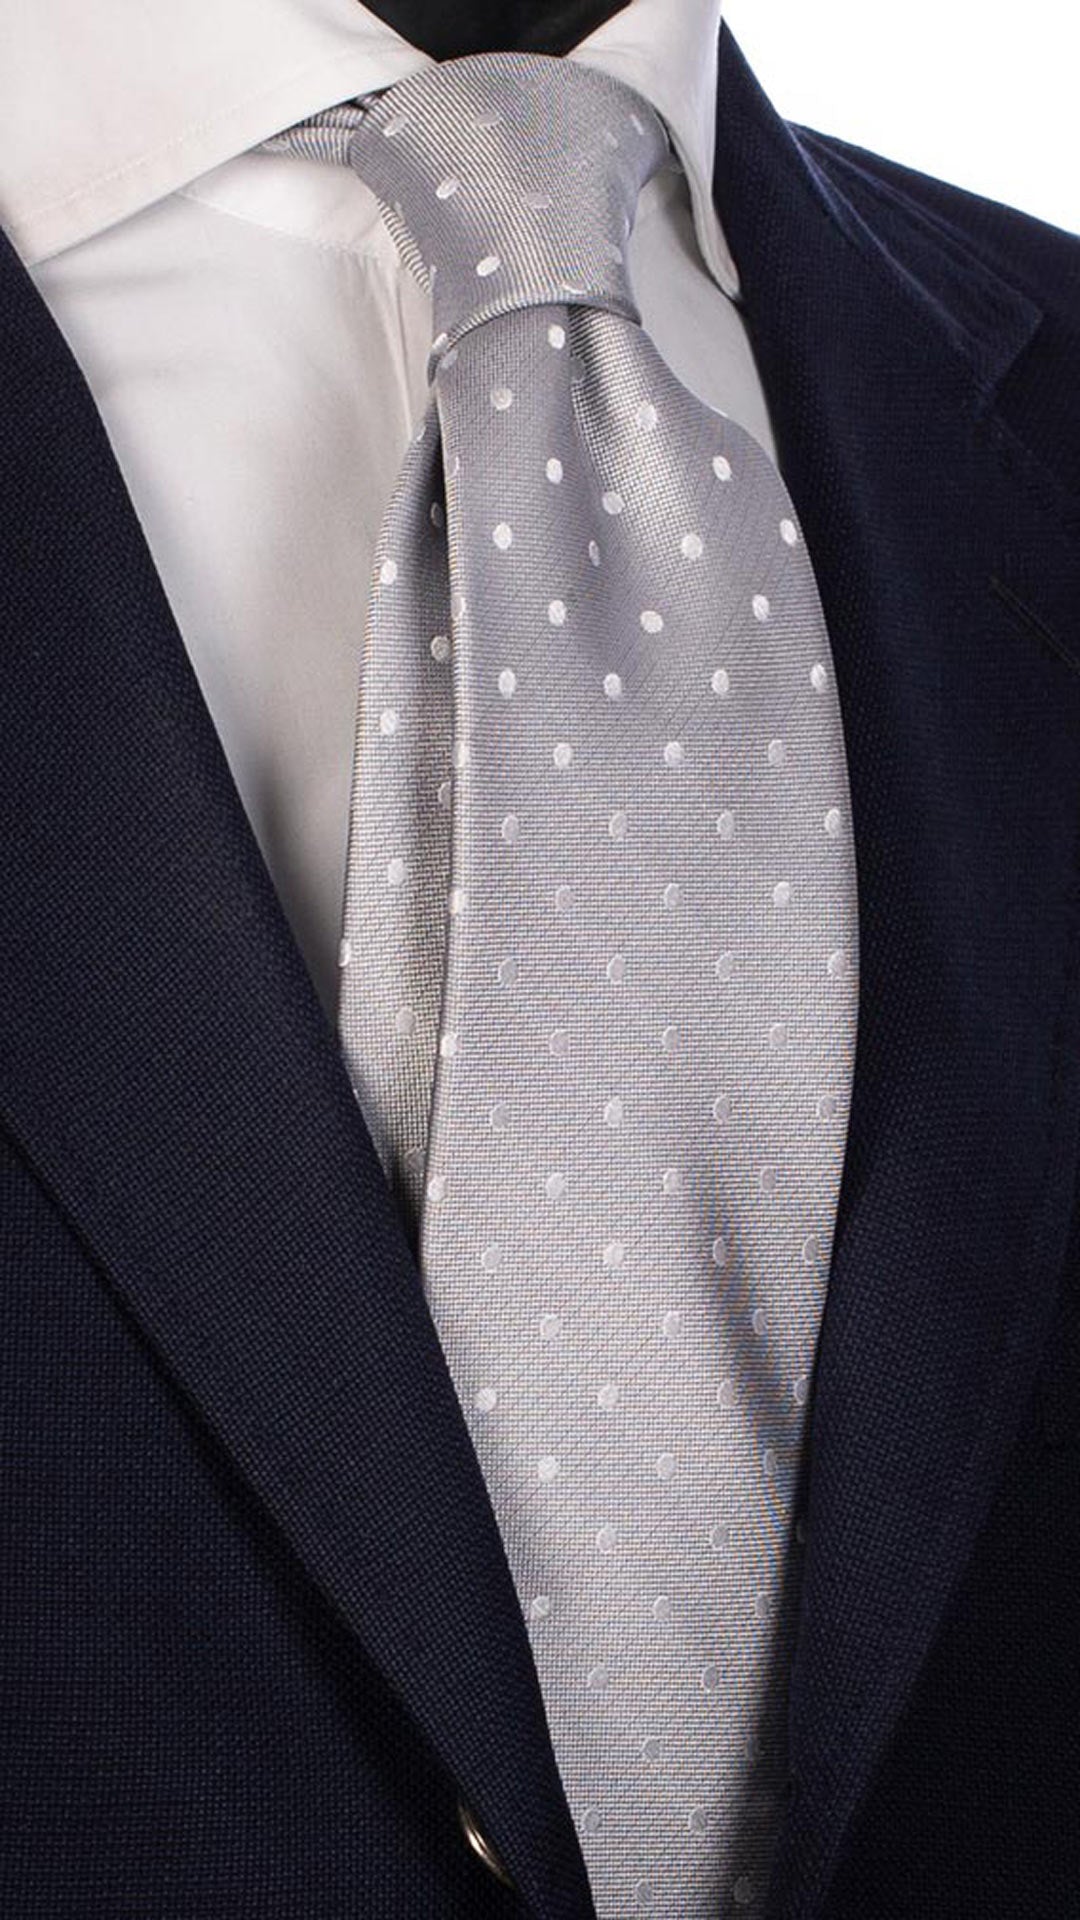 Cravatta da Cerimonia di Seta Grigio Argento Pois Bianco CY3139 Made in Italy Graffeo Cravatte